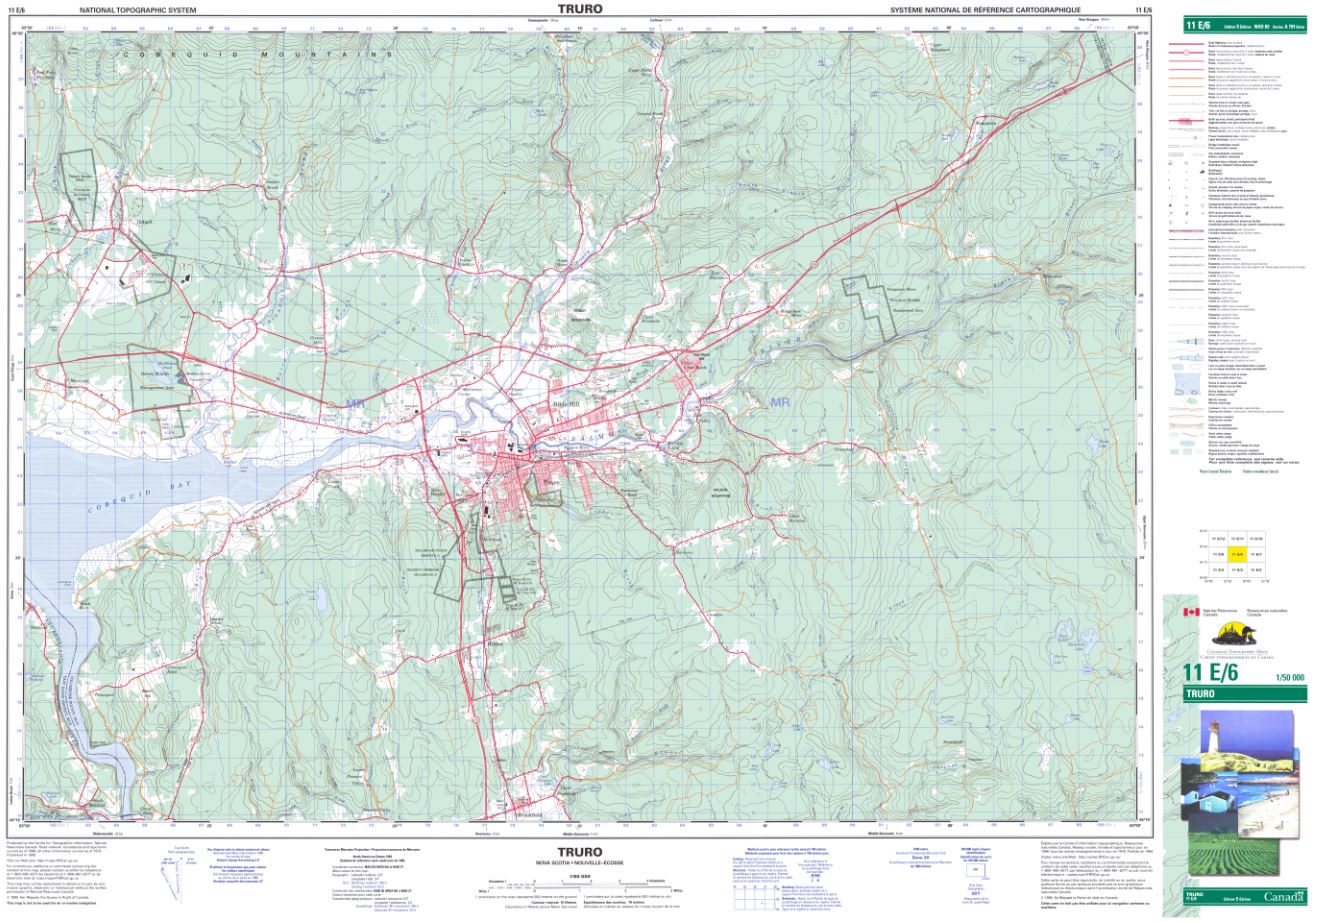 11E/06 Truro Topographic Map Nova Scotia